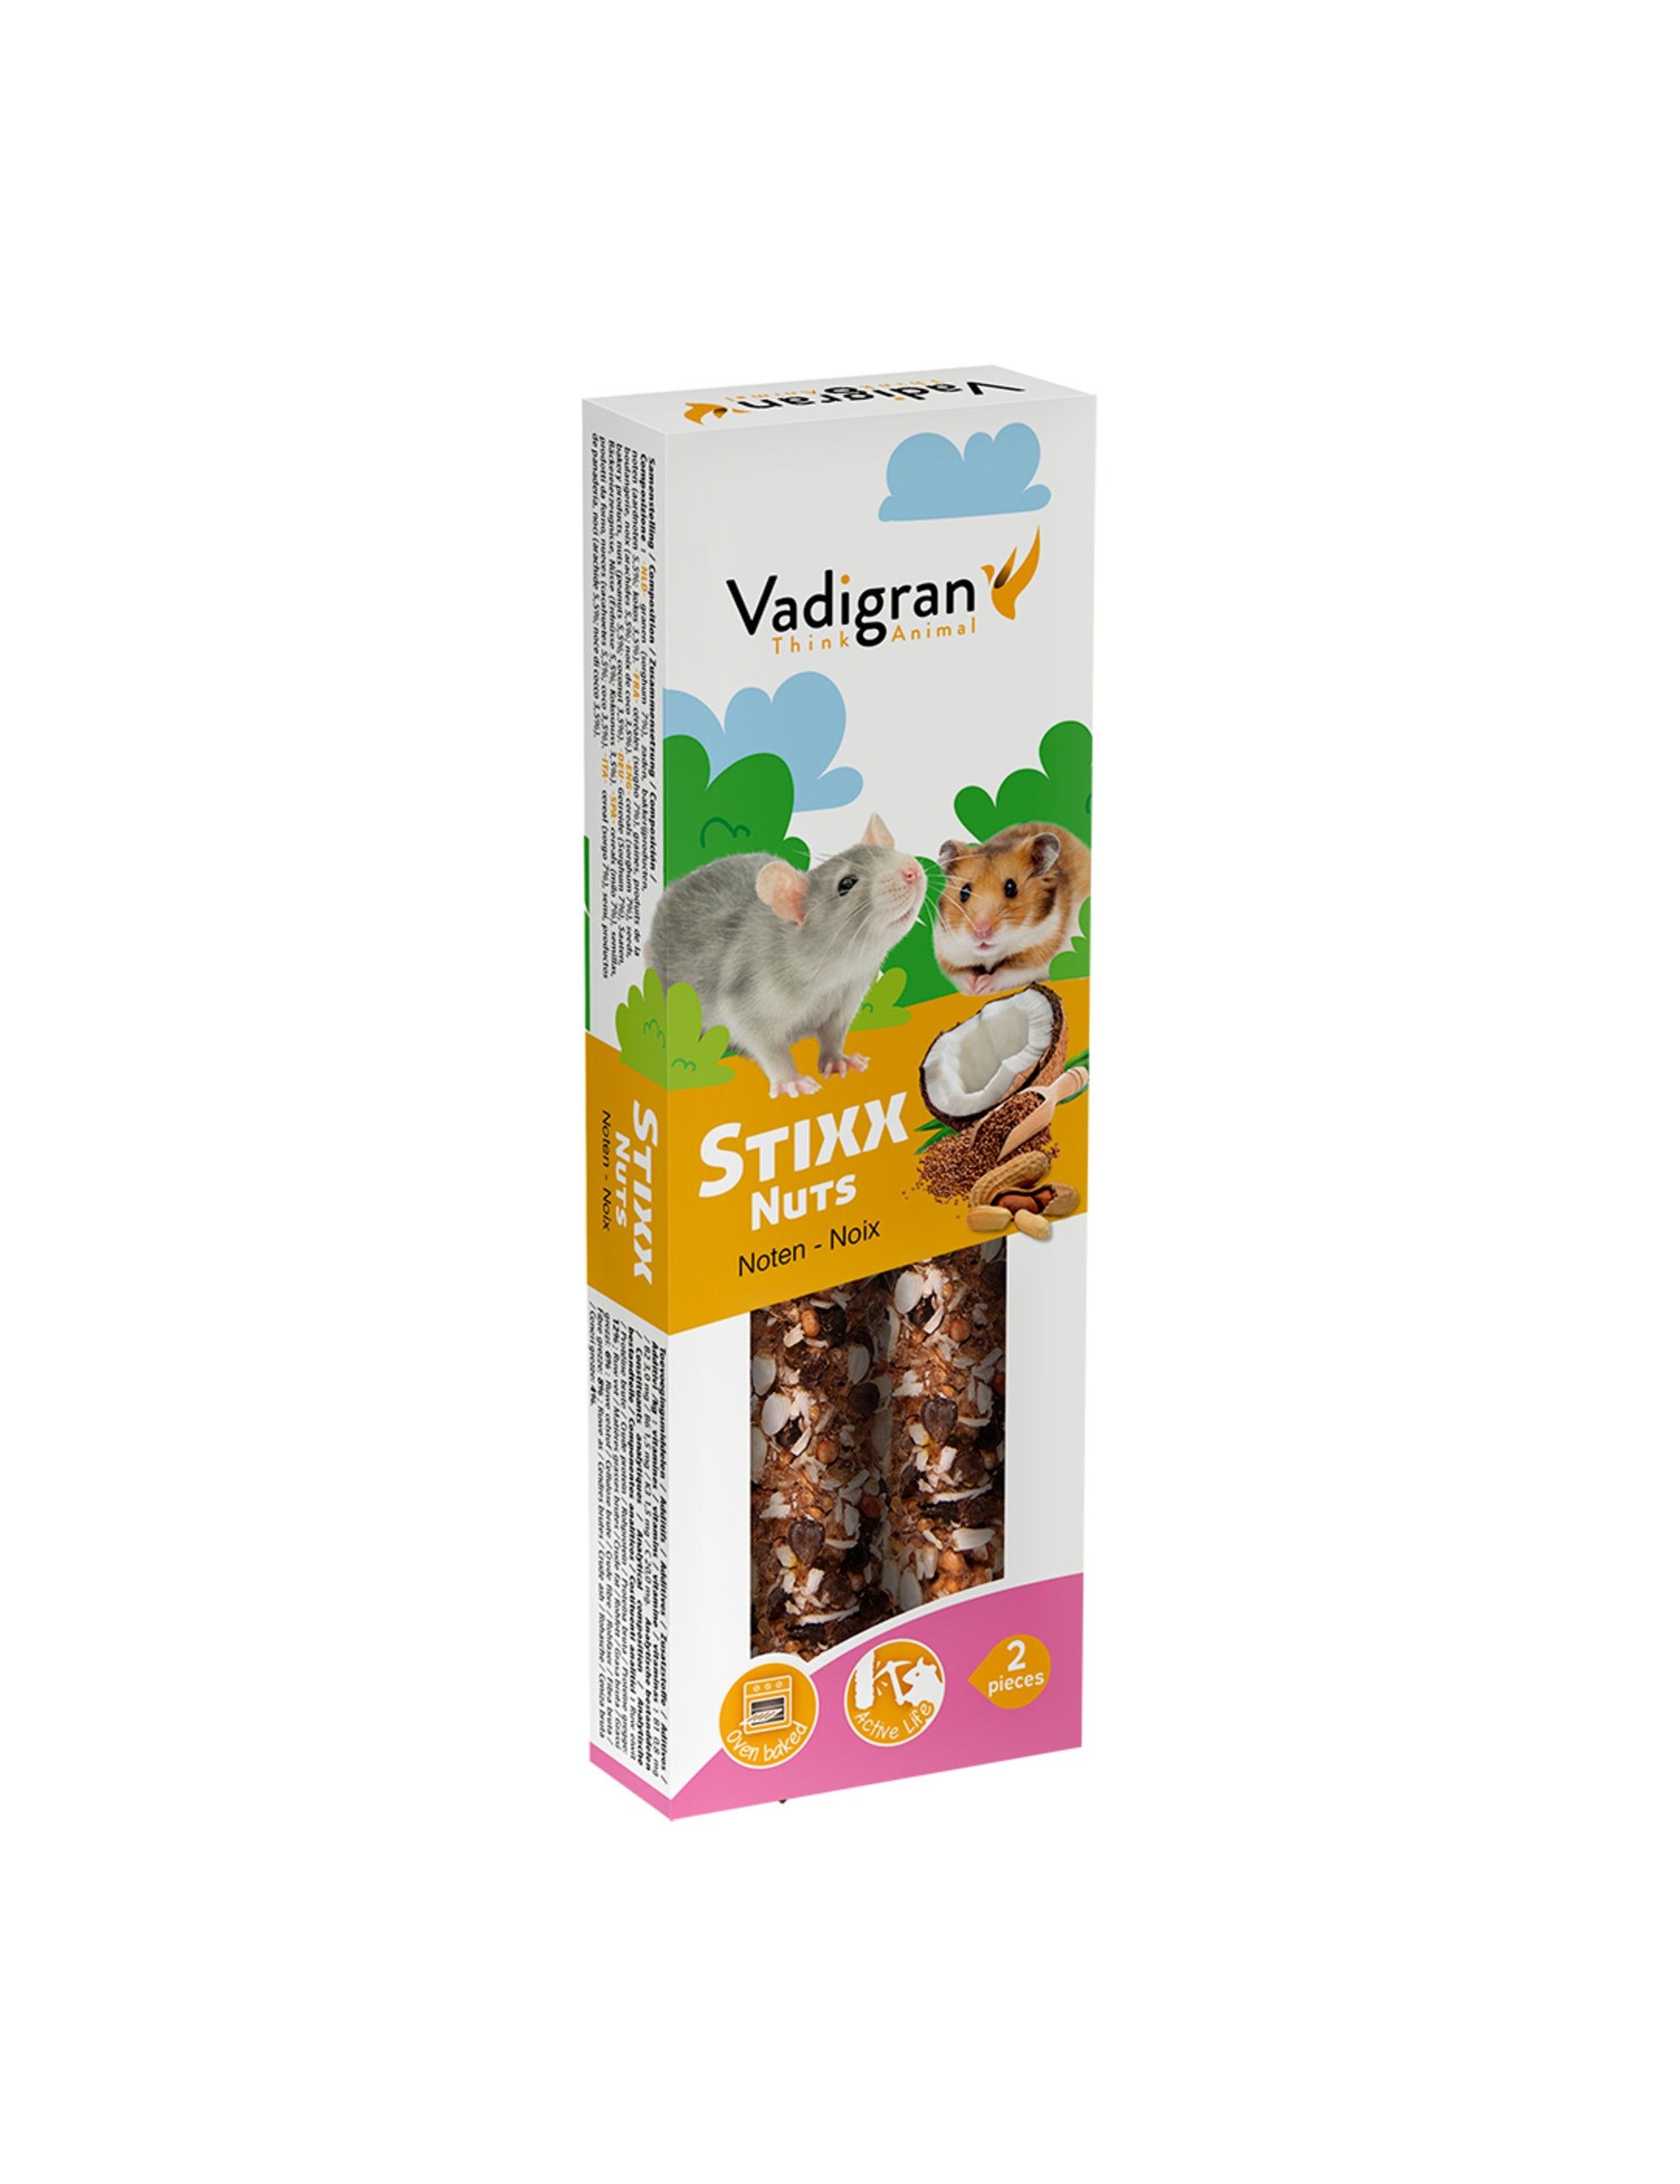 VADIGRAN - Stixx con Nueces